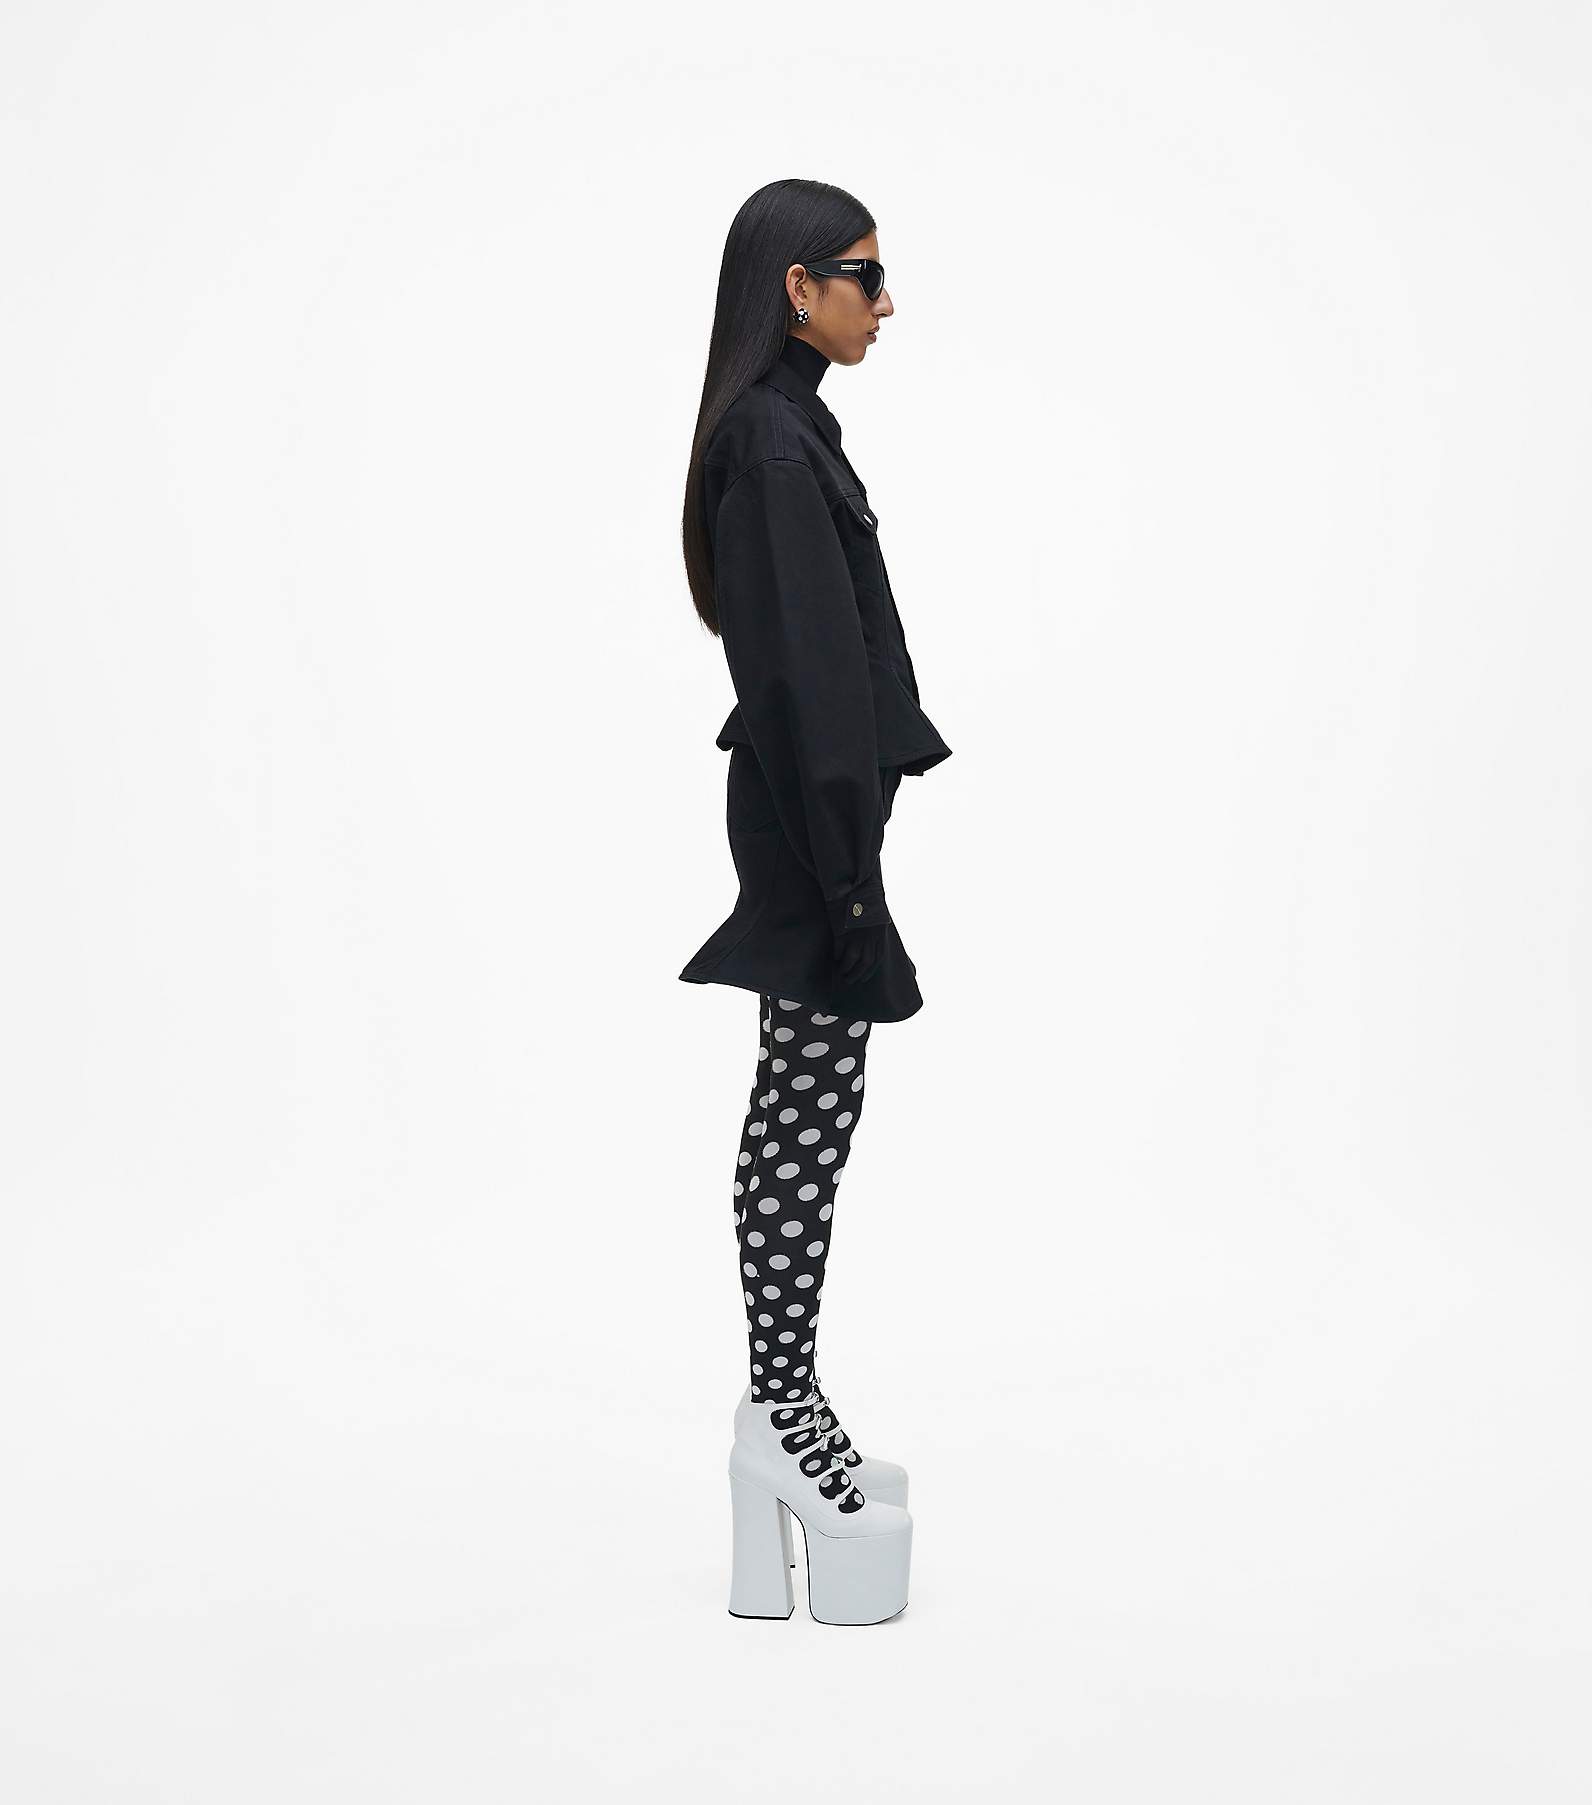 Marc Jacobs Monogram Denim Jacket - Woman Jackets Black Xs - ShopStyle